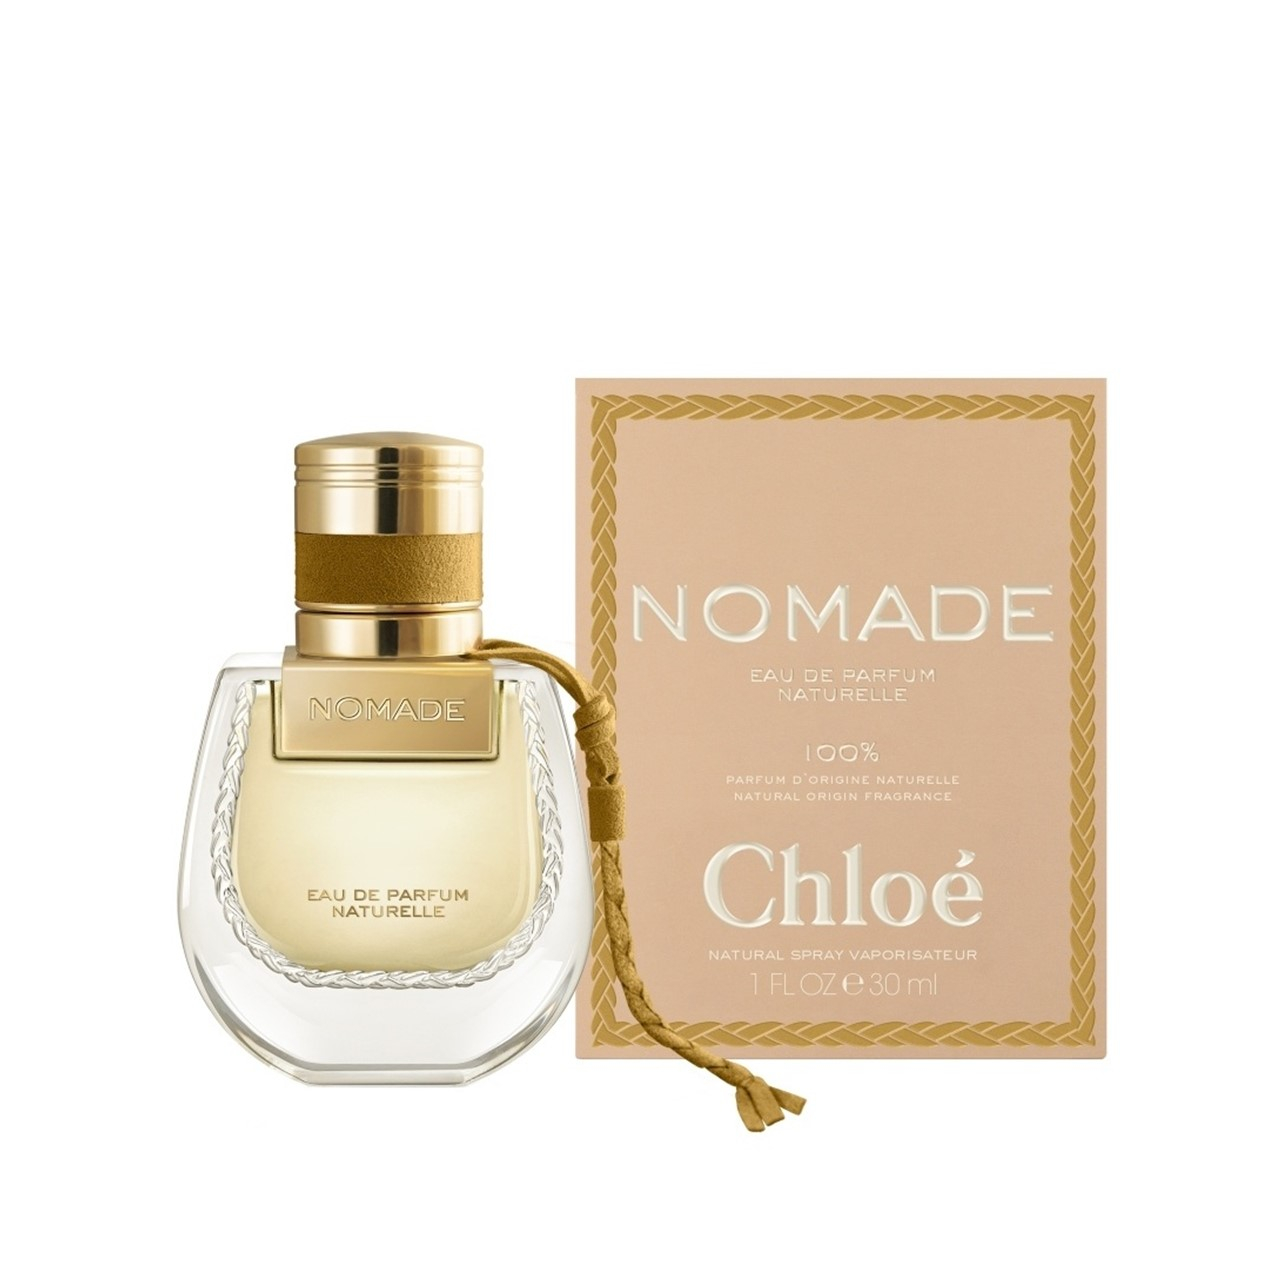 Chloé Nomade Eau de Parfum Naturelle parfum 100% d'origine naturelle